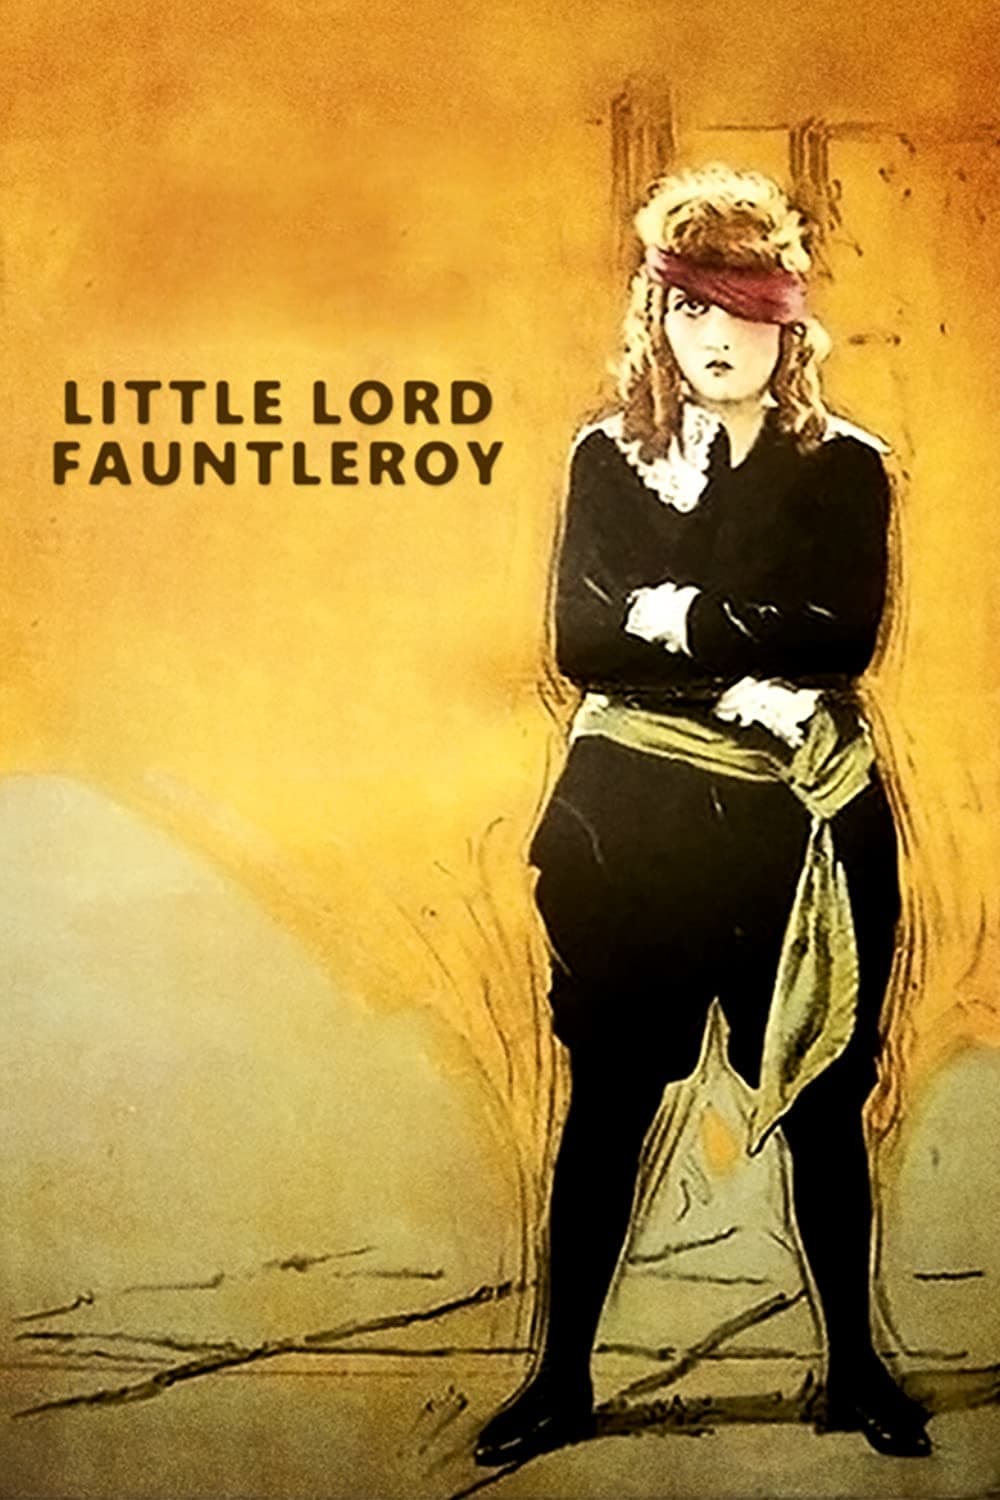 El pequeño Lord Fauntleroy